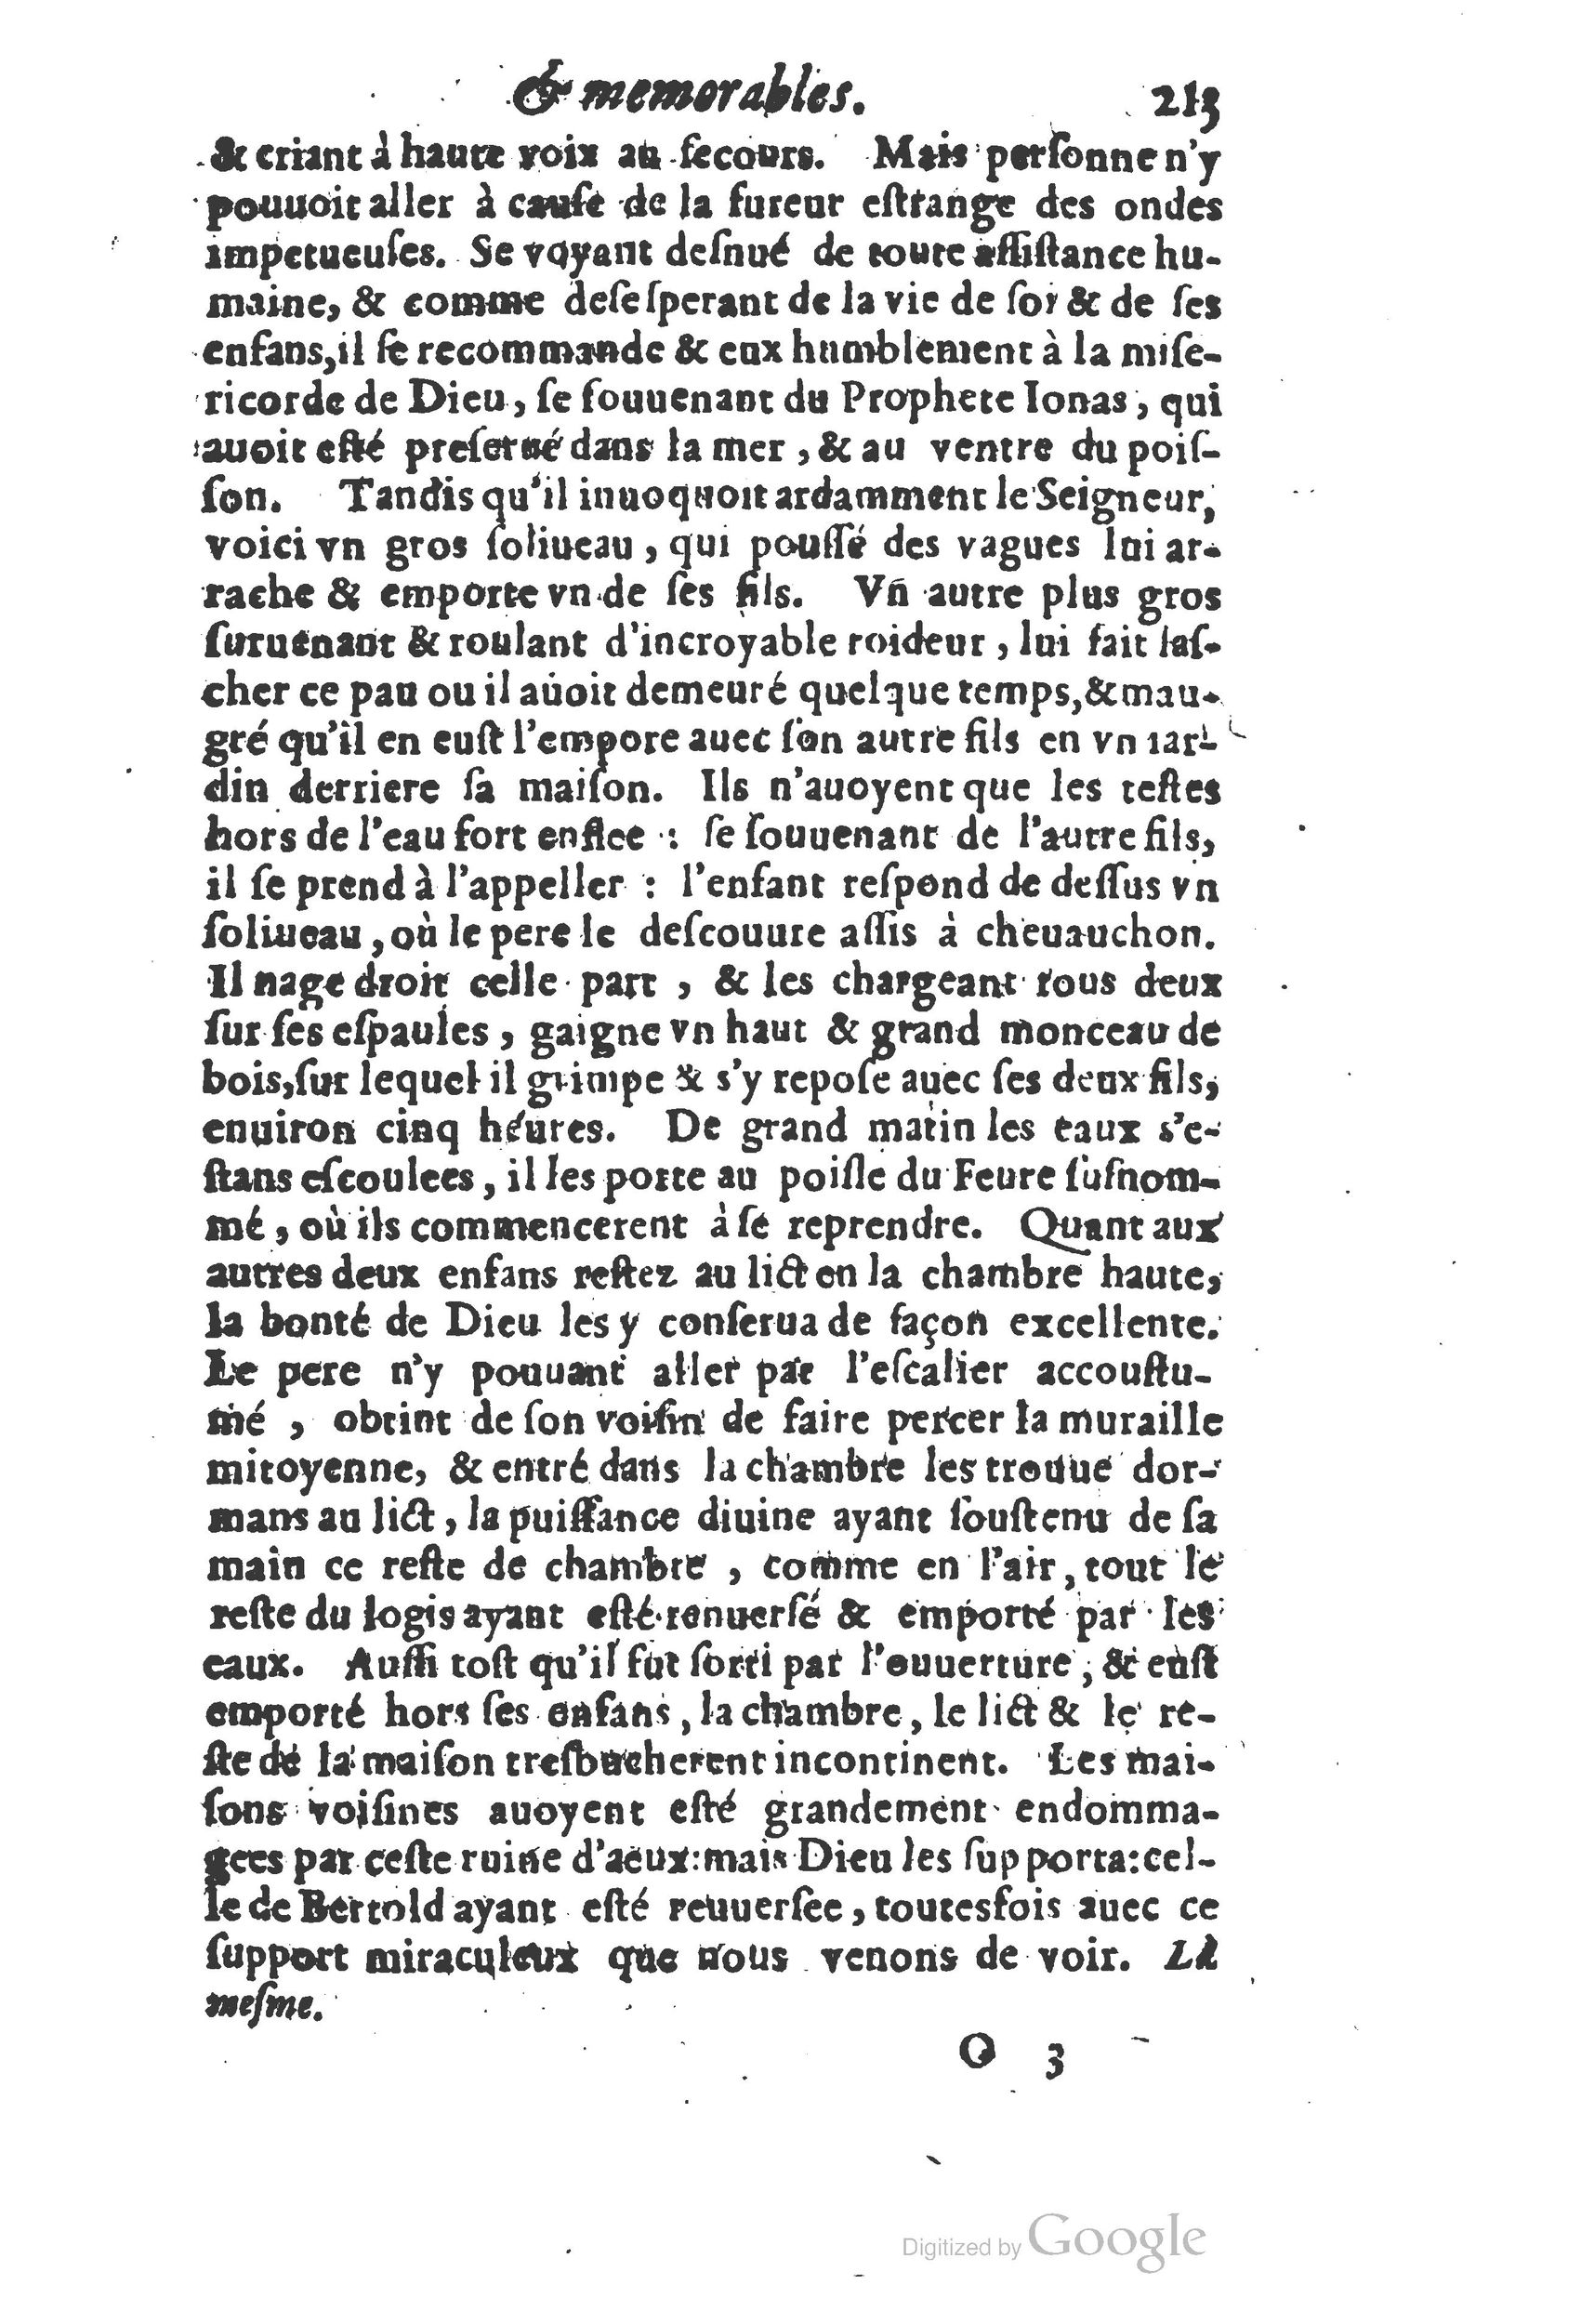 1610 Trésor d’histoires admirables et mémorables de nostre temps Marceau Princeton_Page_0234.jpg